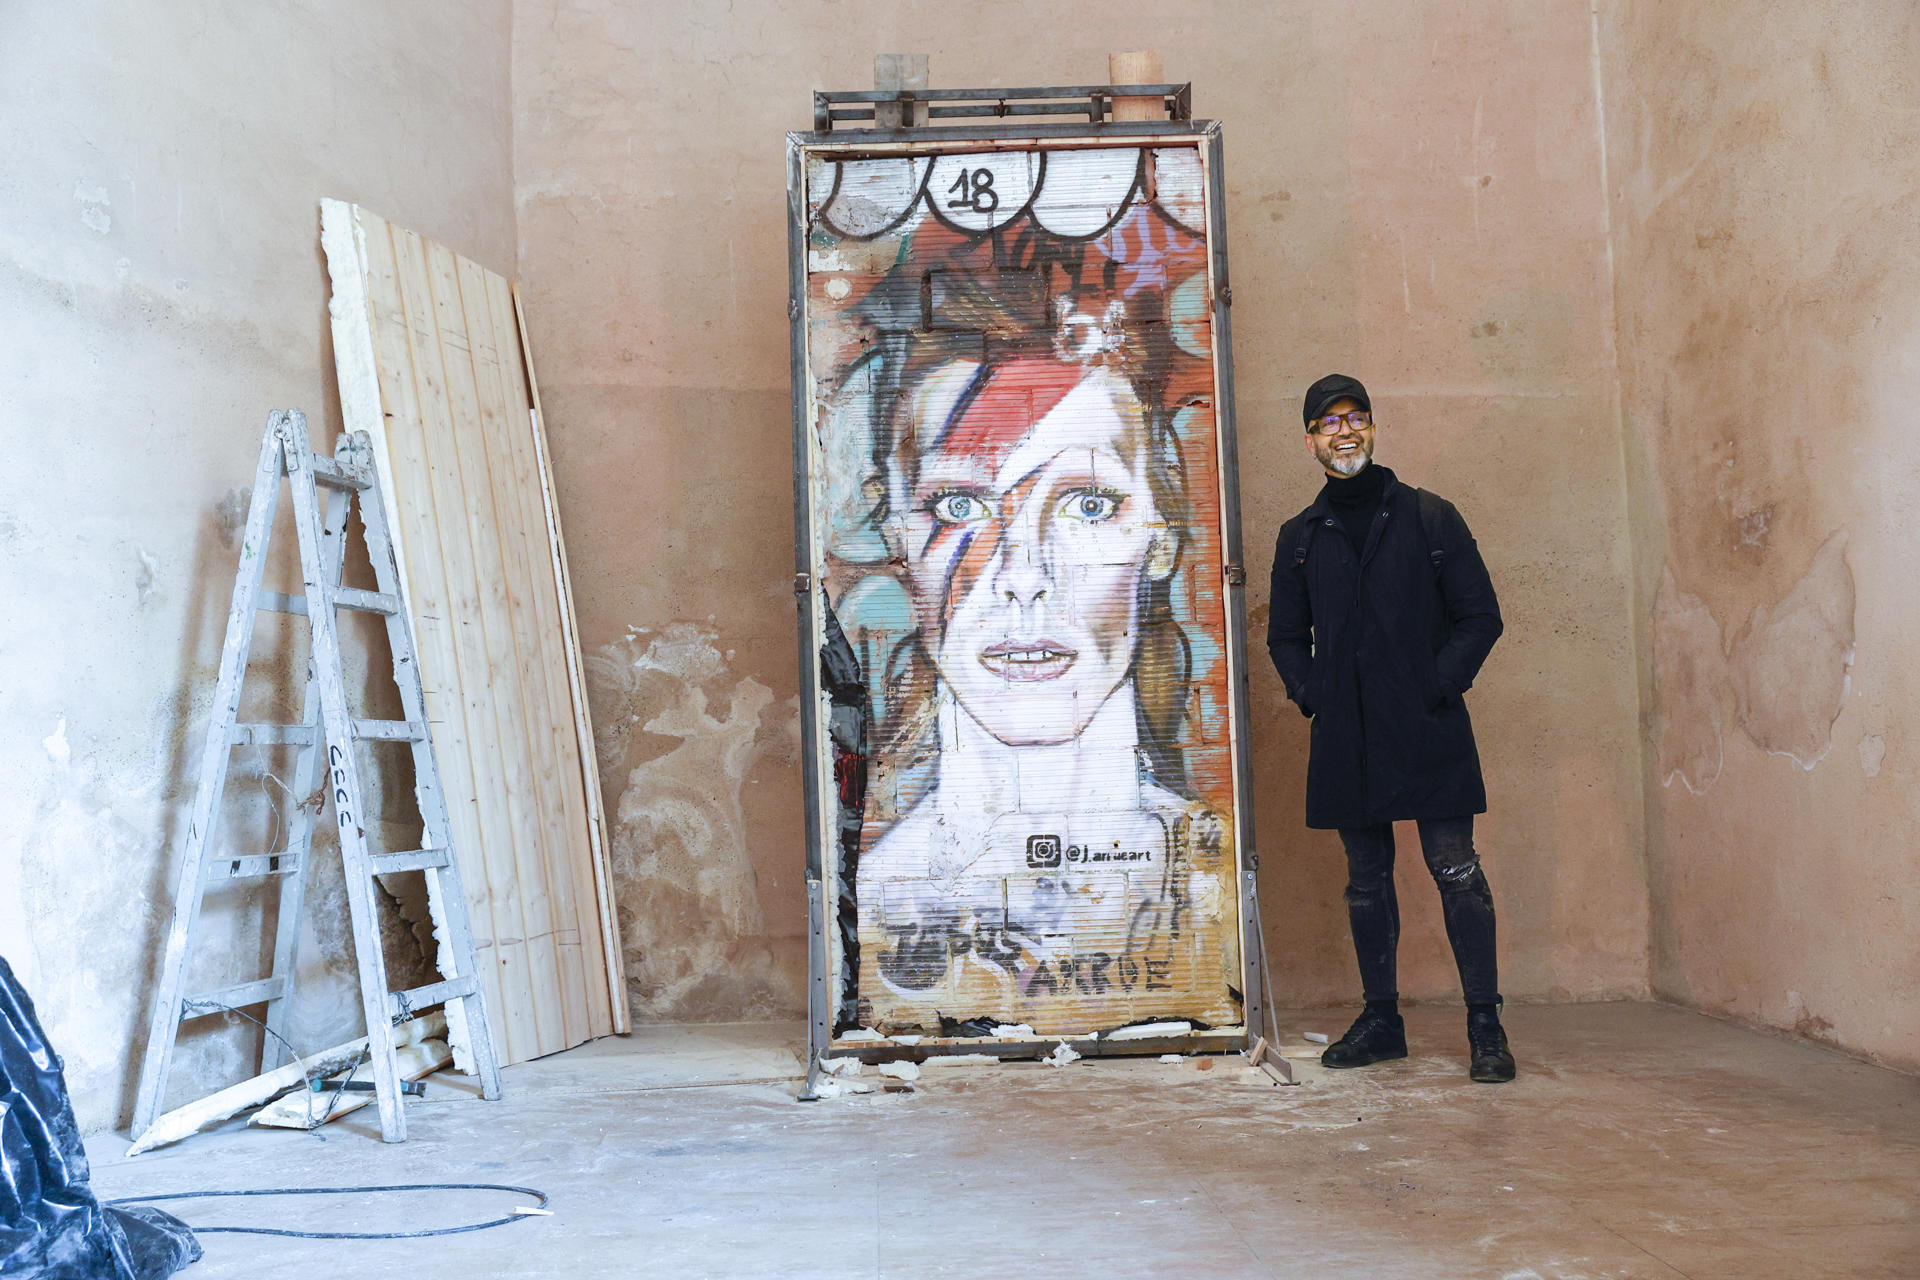 GRAFCVA245. VALENCIA, 12/12/2022.-El artista Jesus Arrúe posa con el el grafiti de David Bowie que dibujó en un muro de la ciudad de Valencia y que ha sido trasladado desde la ubicación callejera en el que fué creado, al museo del Carme, que va a contar desde ahora con esta obra de arte urbano. EFE/ Manuel Bruque